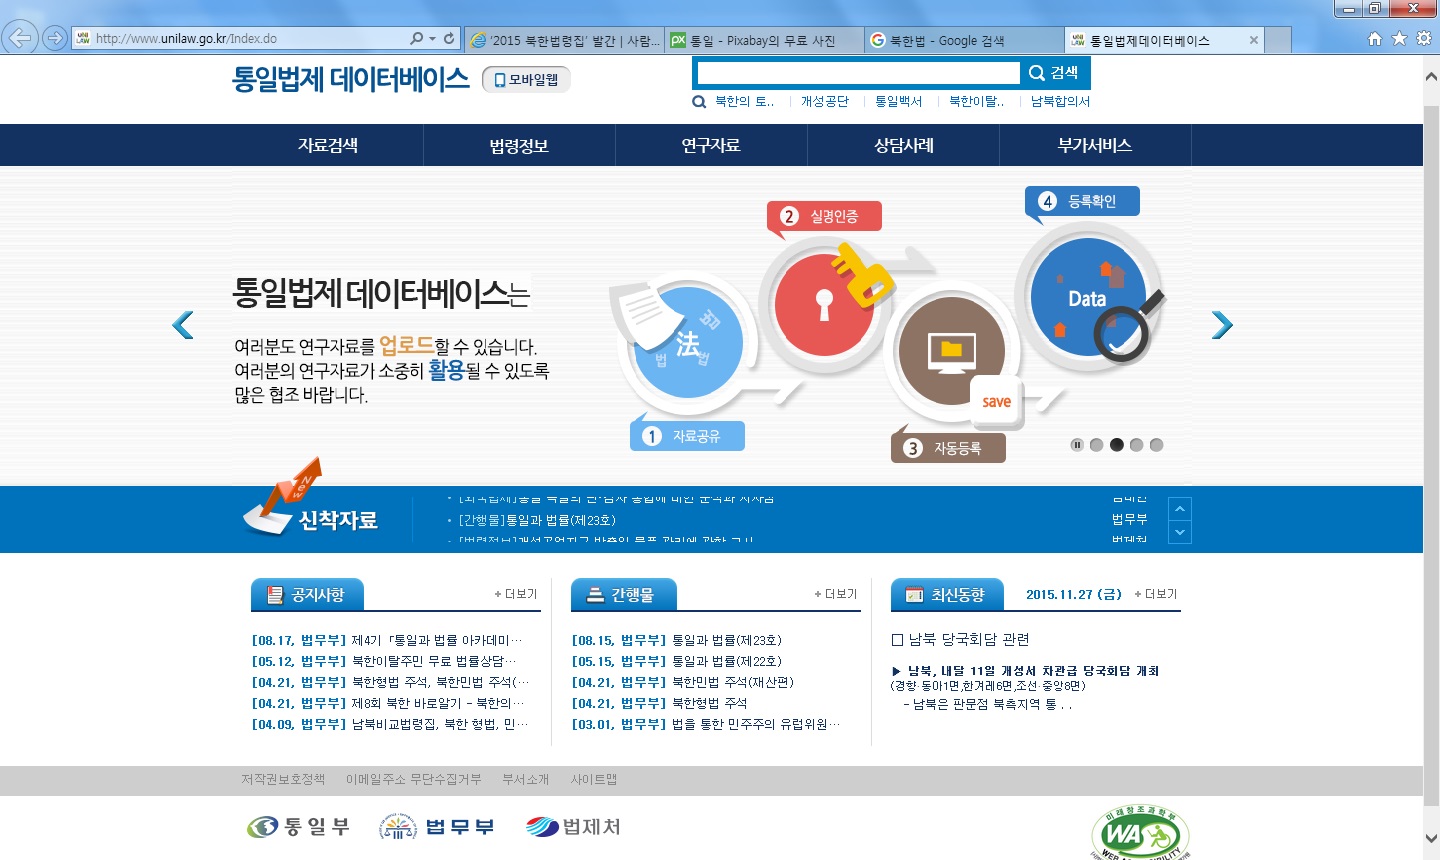 통일부, 법무부, 법제처가 운영하는 통일법제데이터베이스 웹사이트 메인 화면.